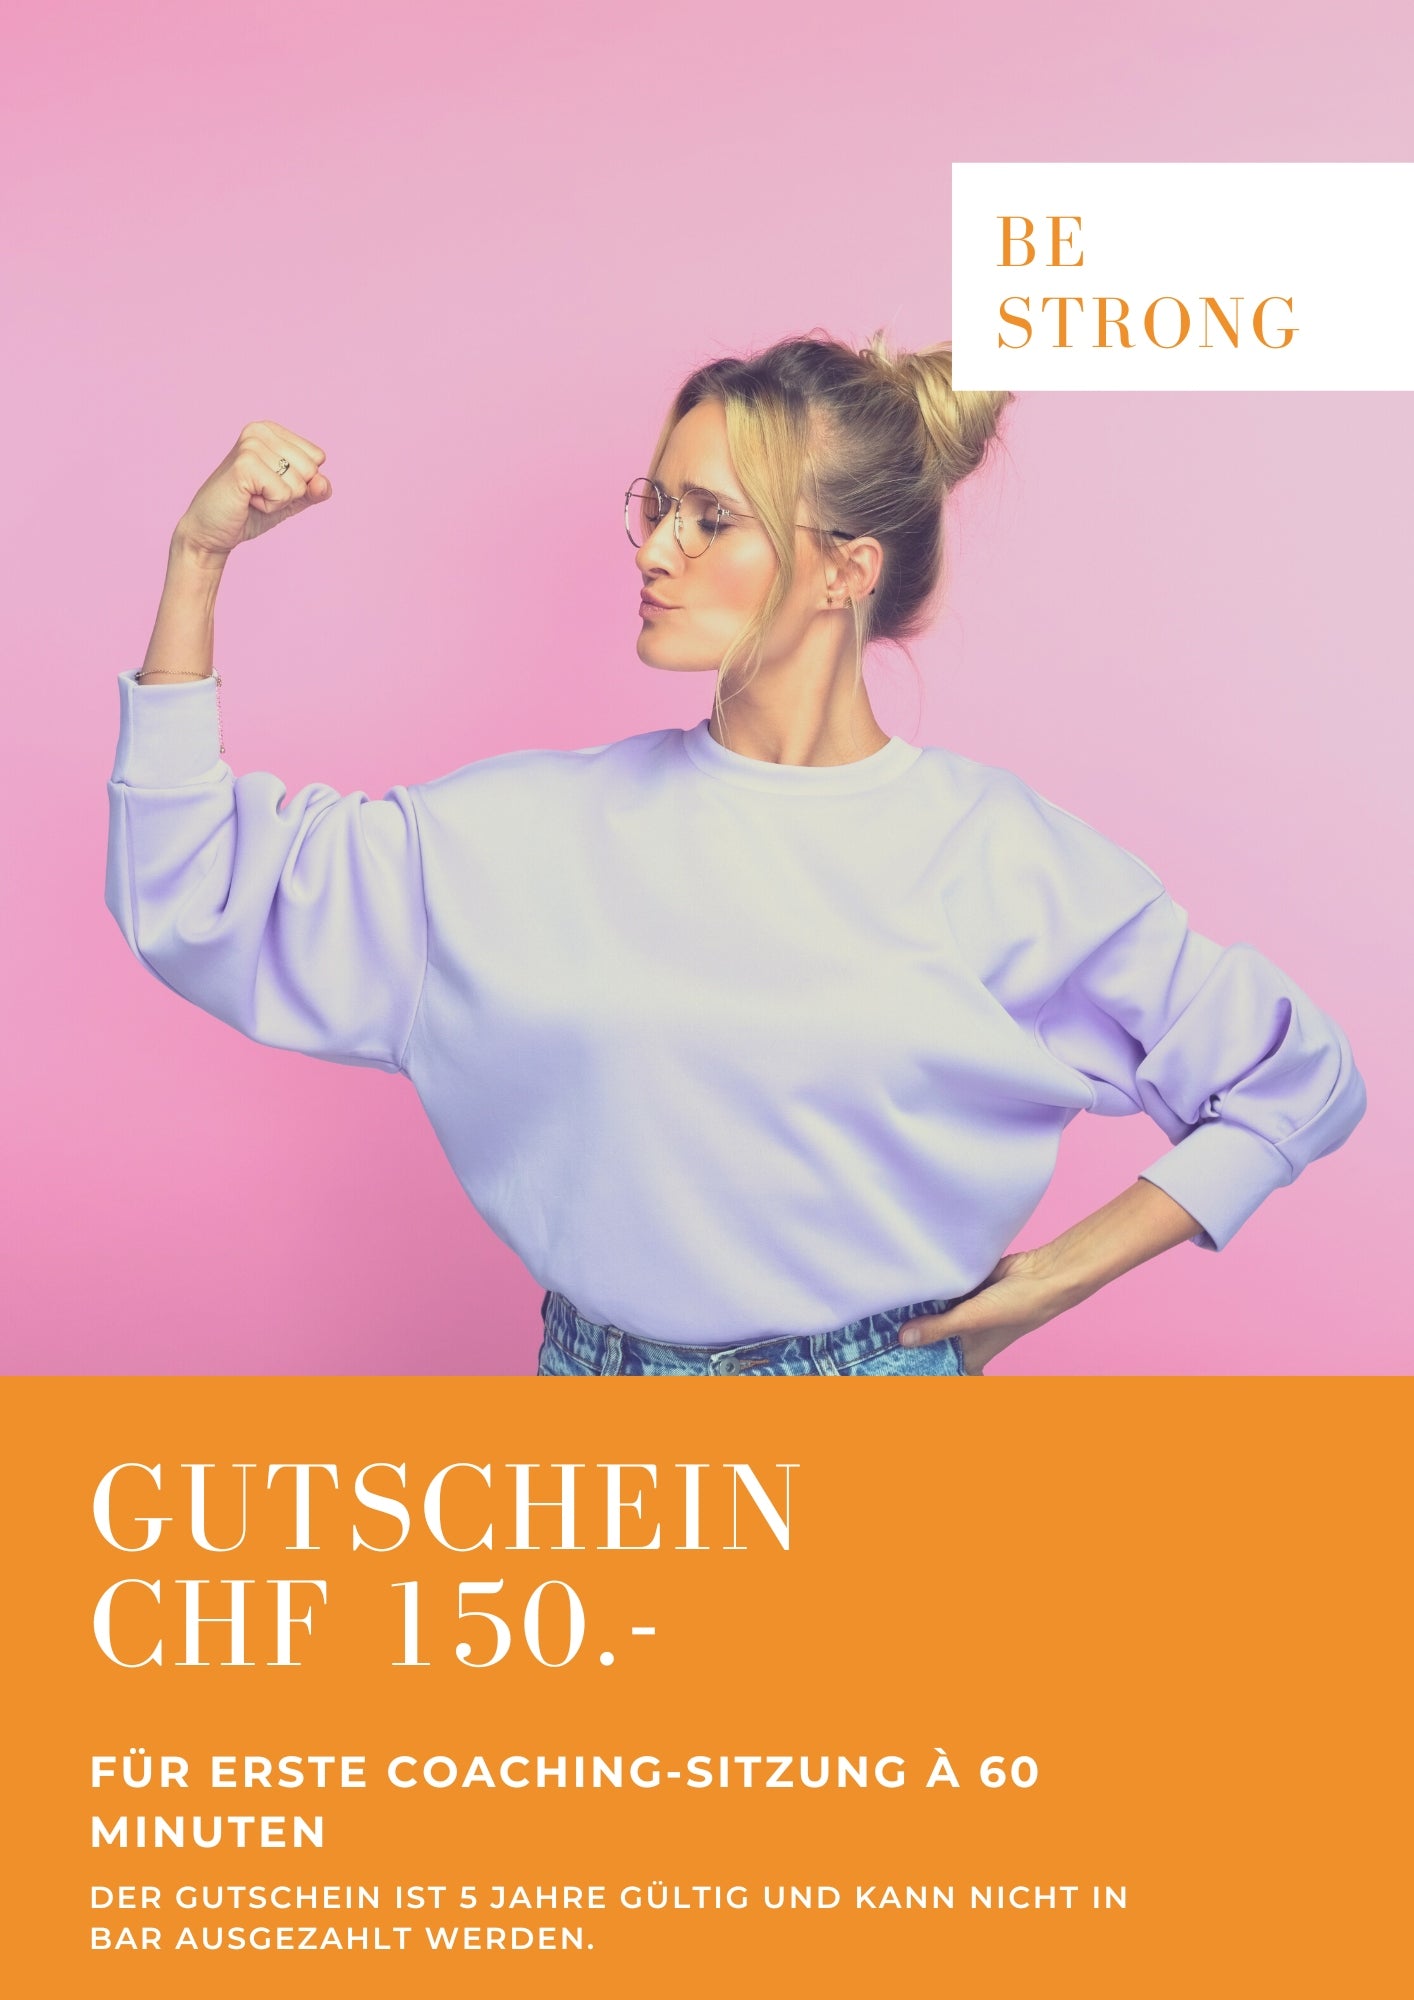 150 CHF Gutschein für die erste Coaching-Sitzung bei BE STRONG à 60 Minuten